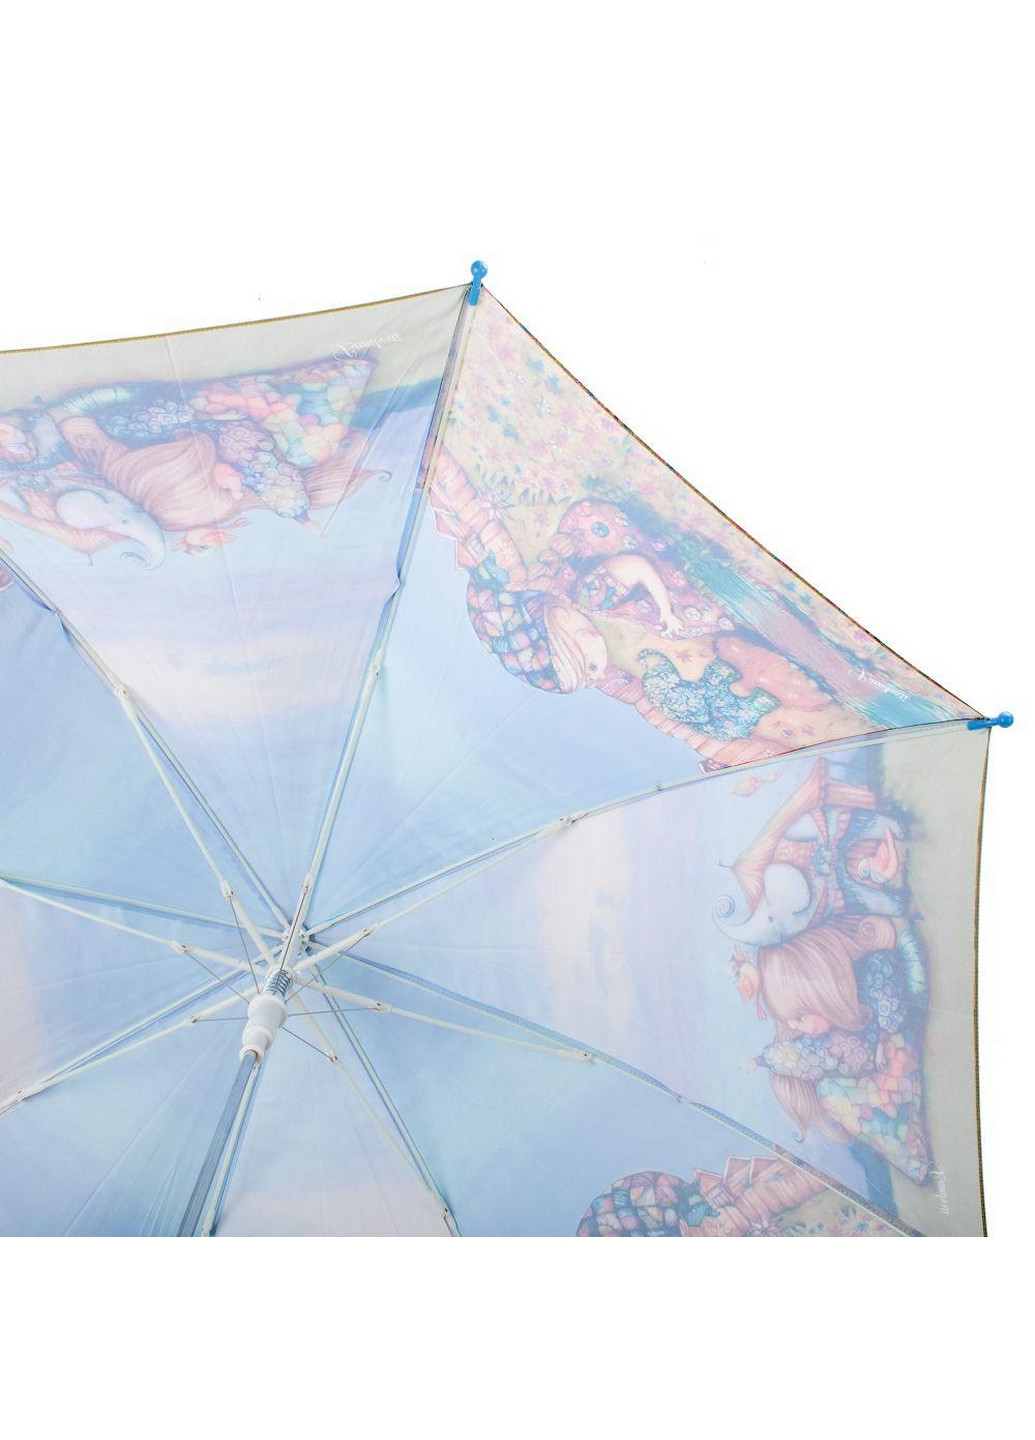 Детский зонт-трость полуавтомат 91 см Lamberti (260330788)